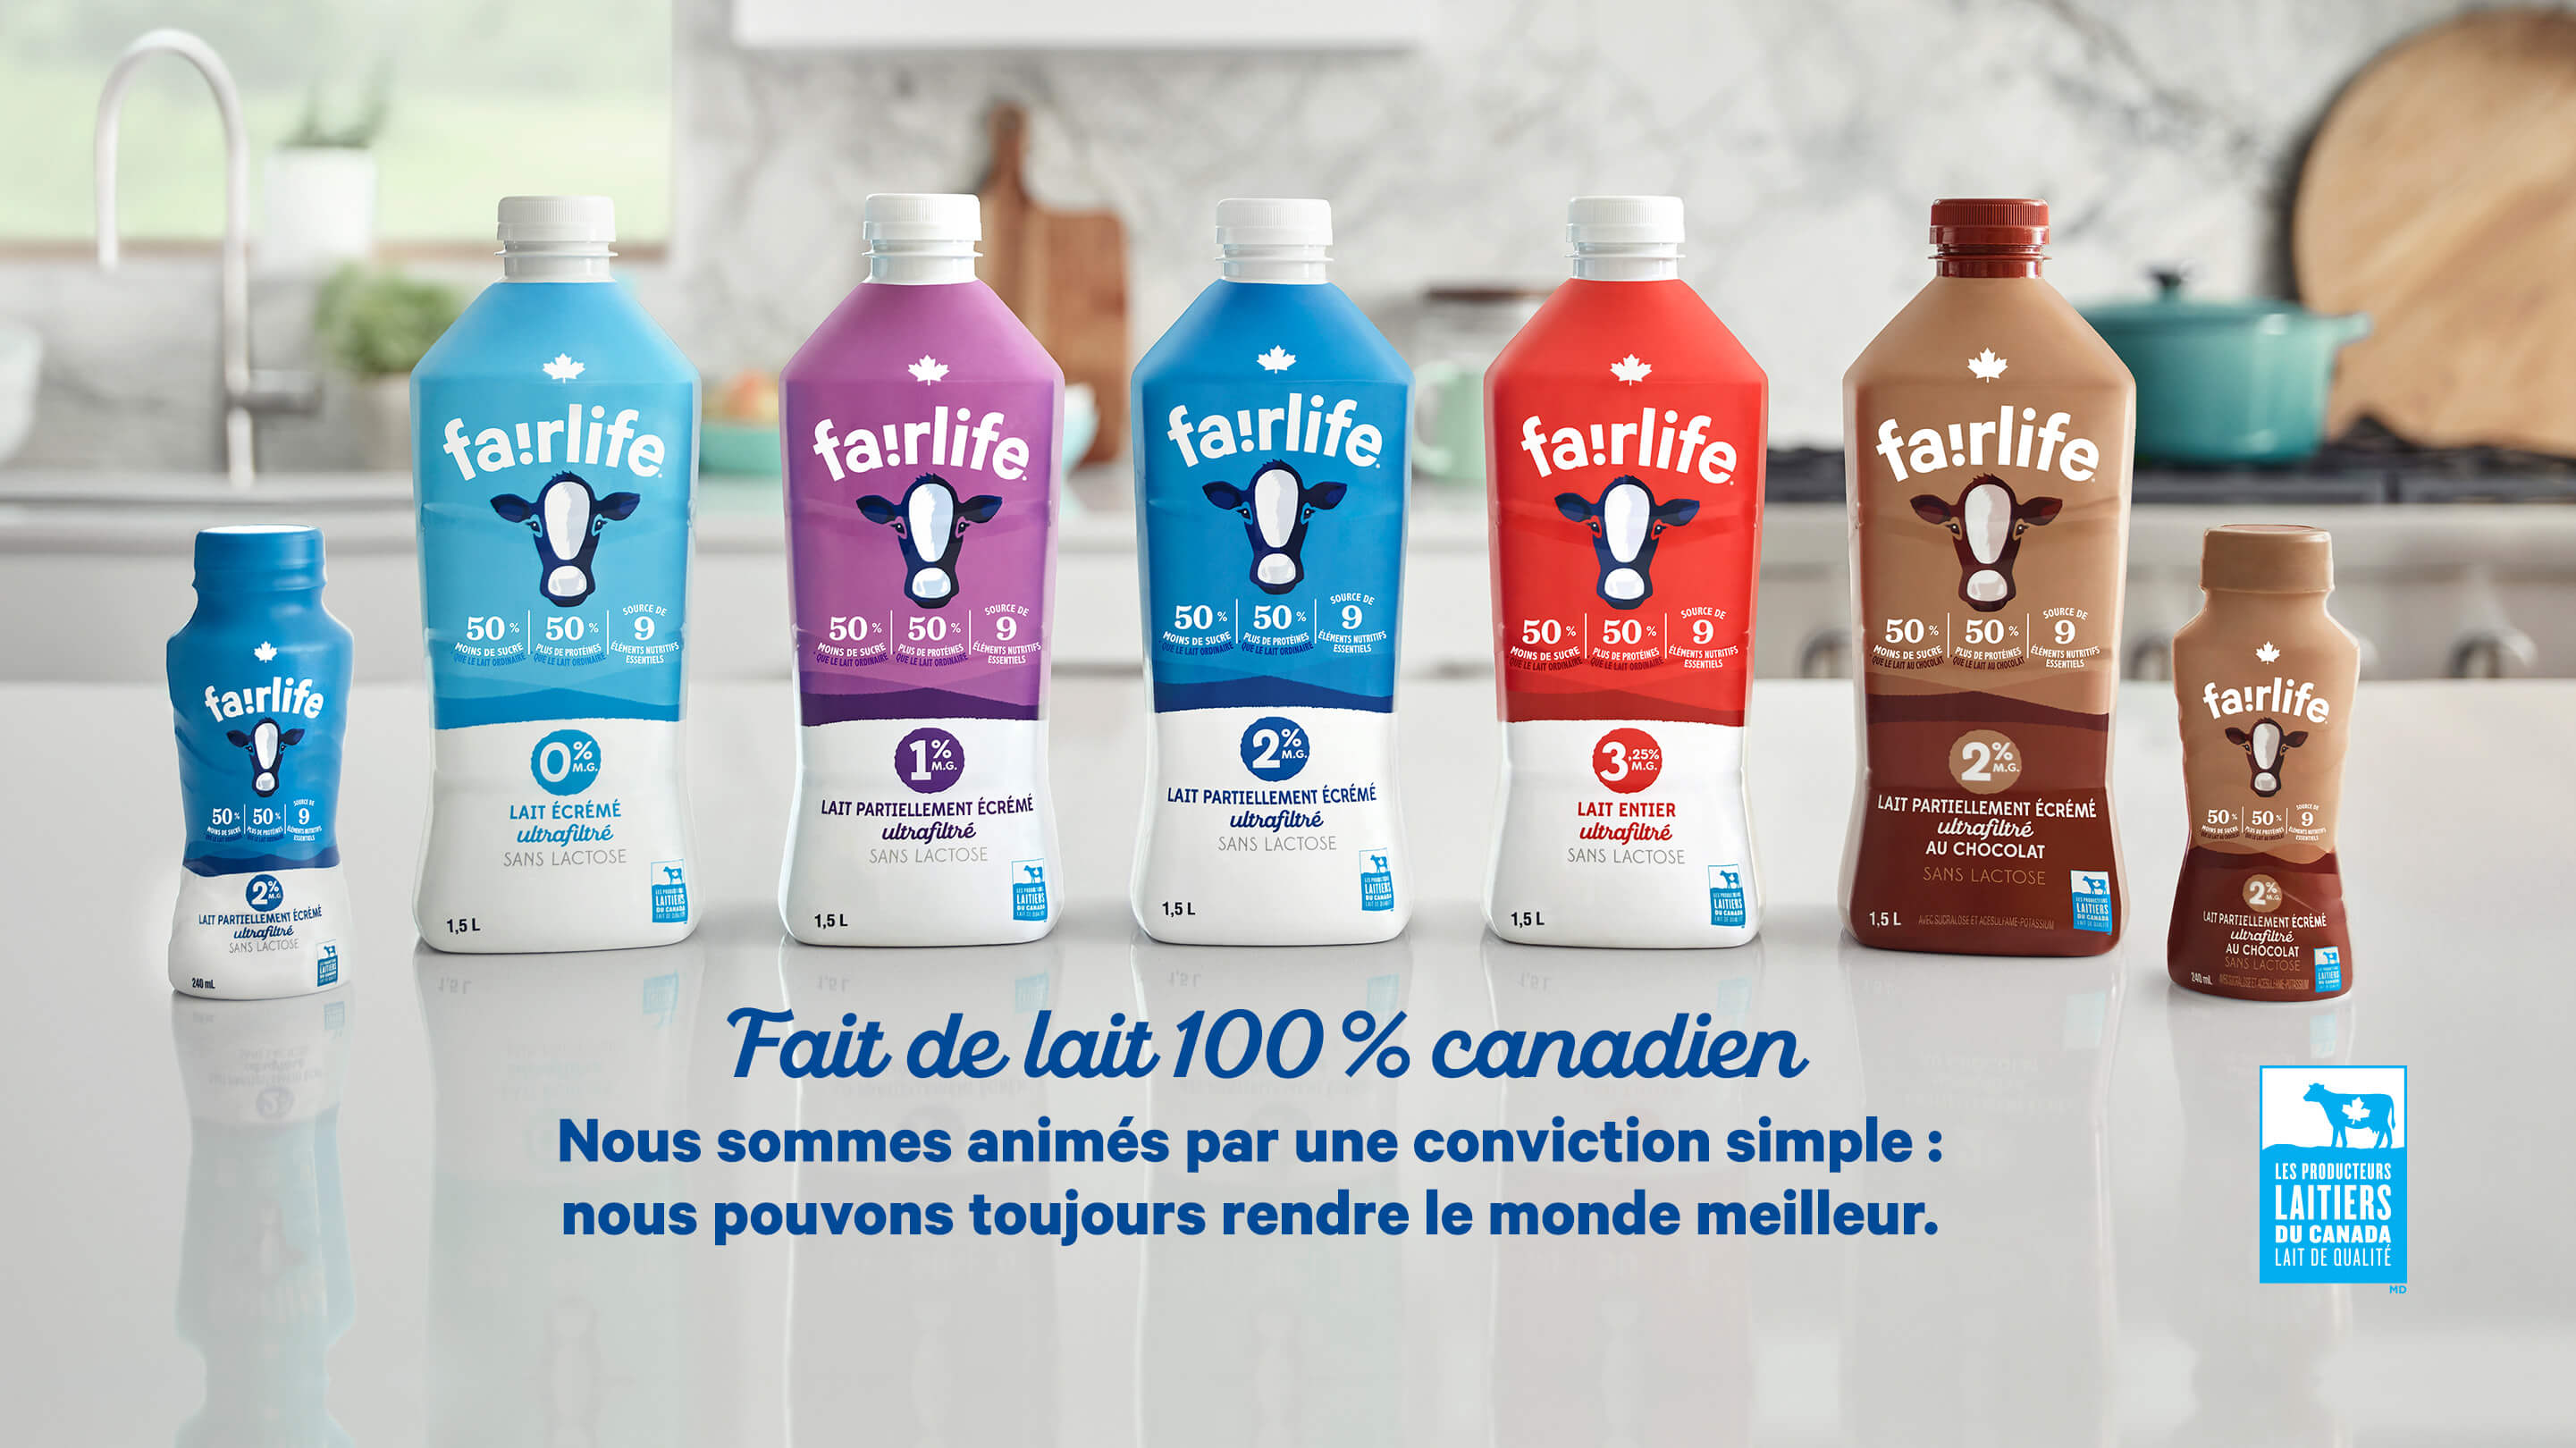 fairlife. Fait de lait 100 % canadien. Nous sommes animés par un conviction simple : nous pouvons toujours rendre le monde meilleur.